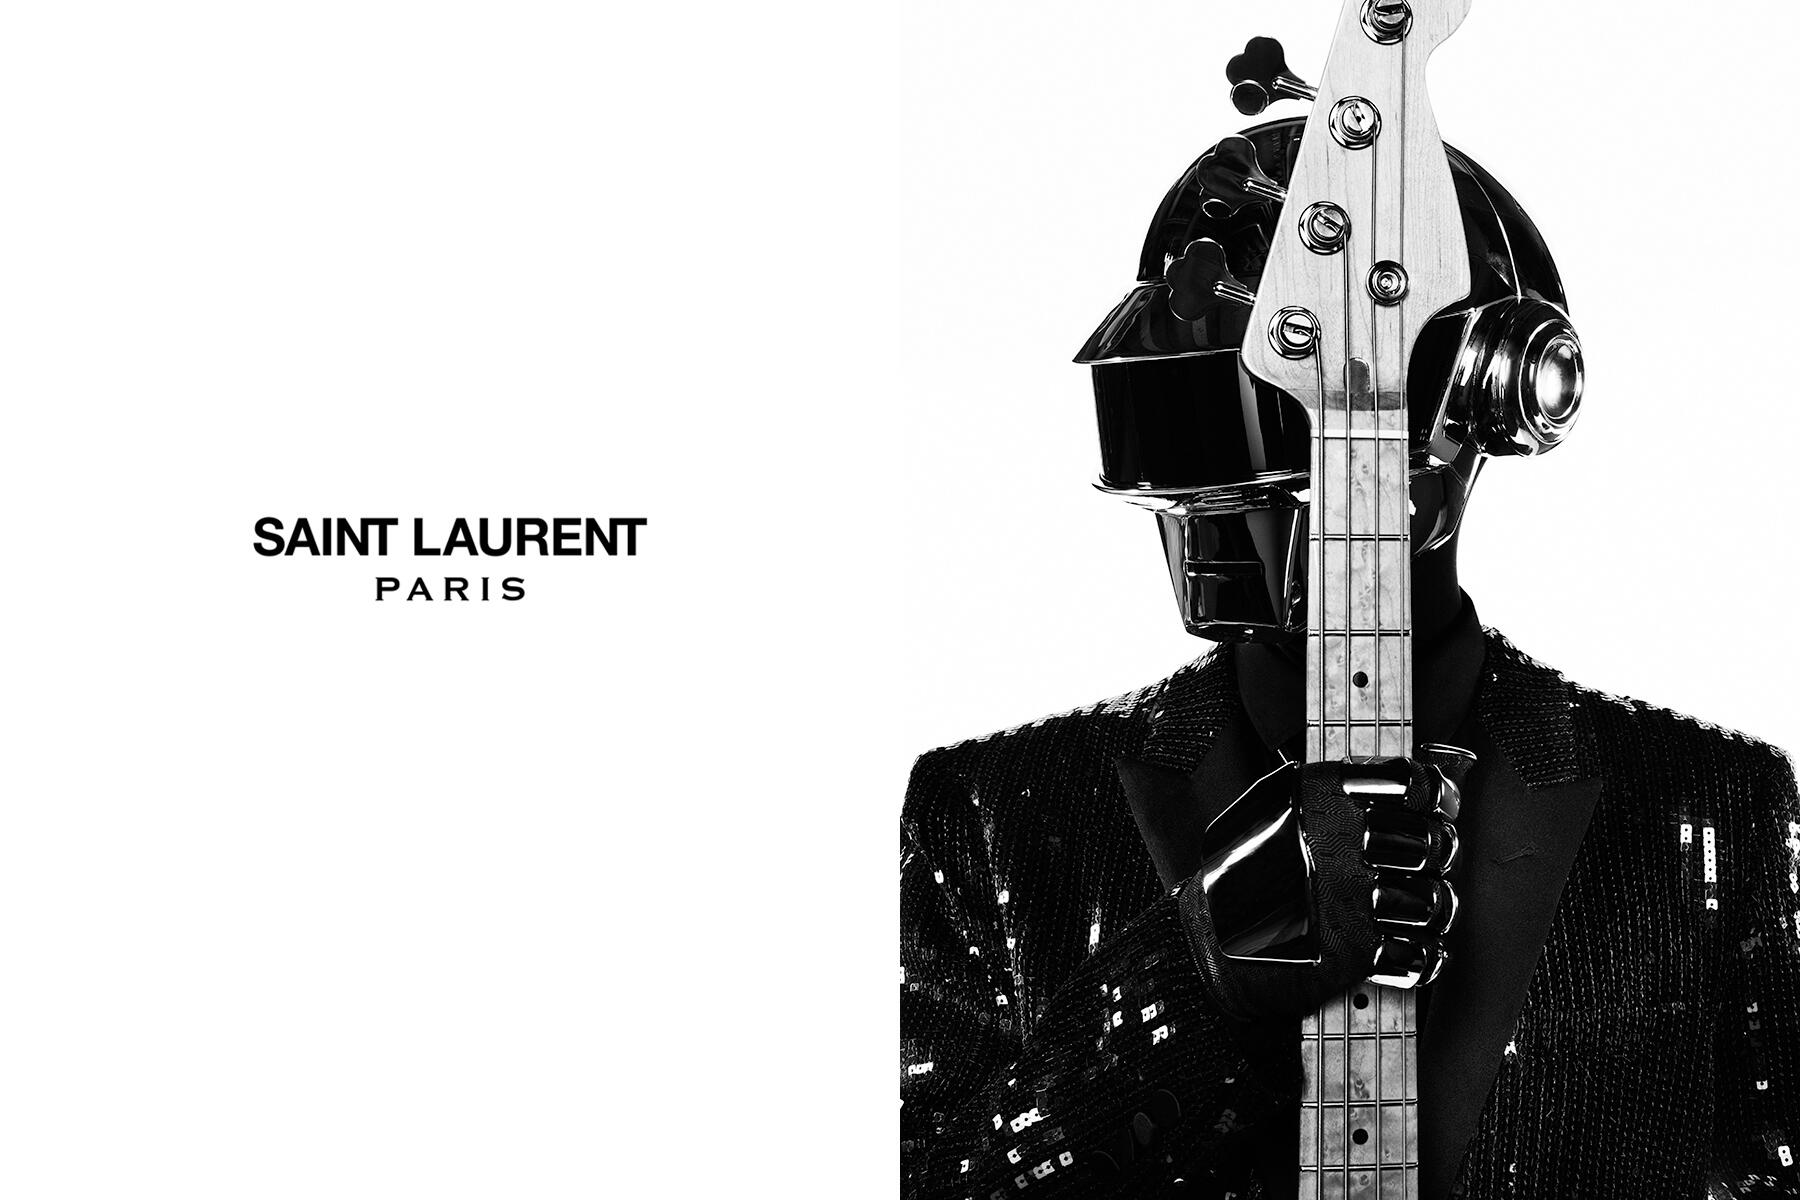 Saint Laurent Saint Laurent Music Project Daft Punk 1 Http T Co Rh8euvtrr3 Twitter